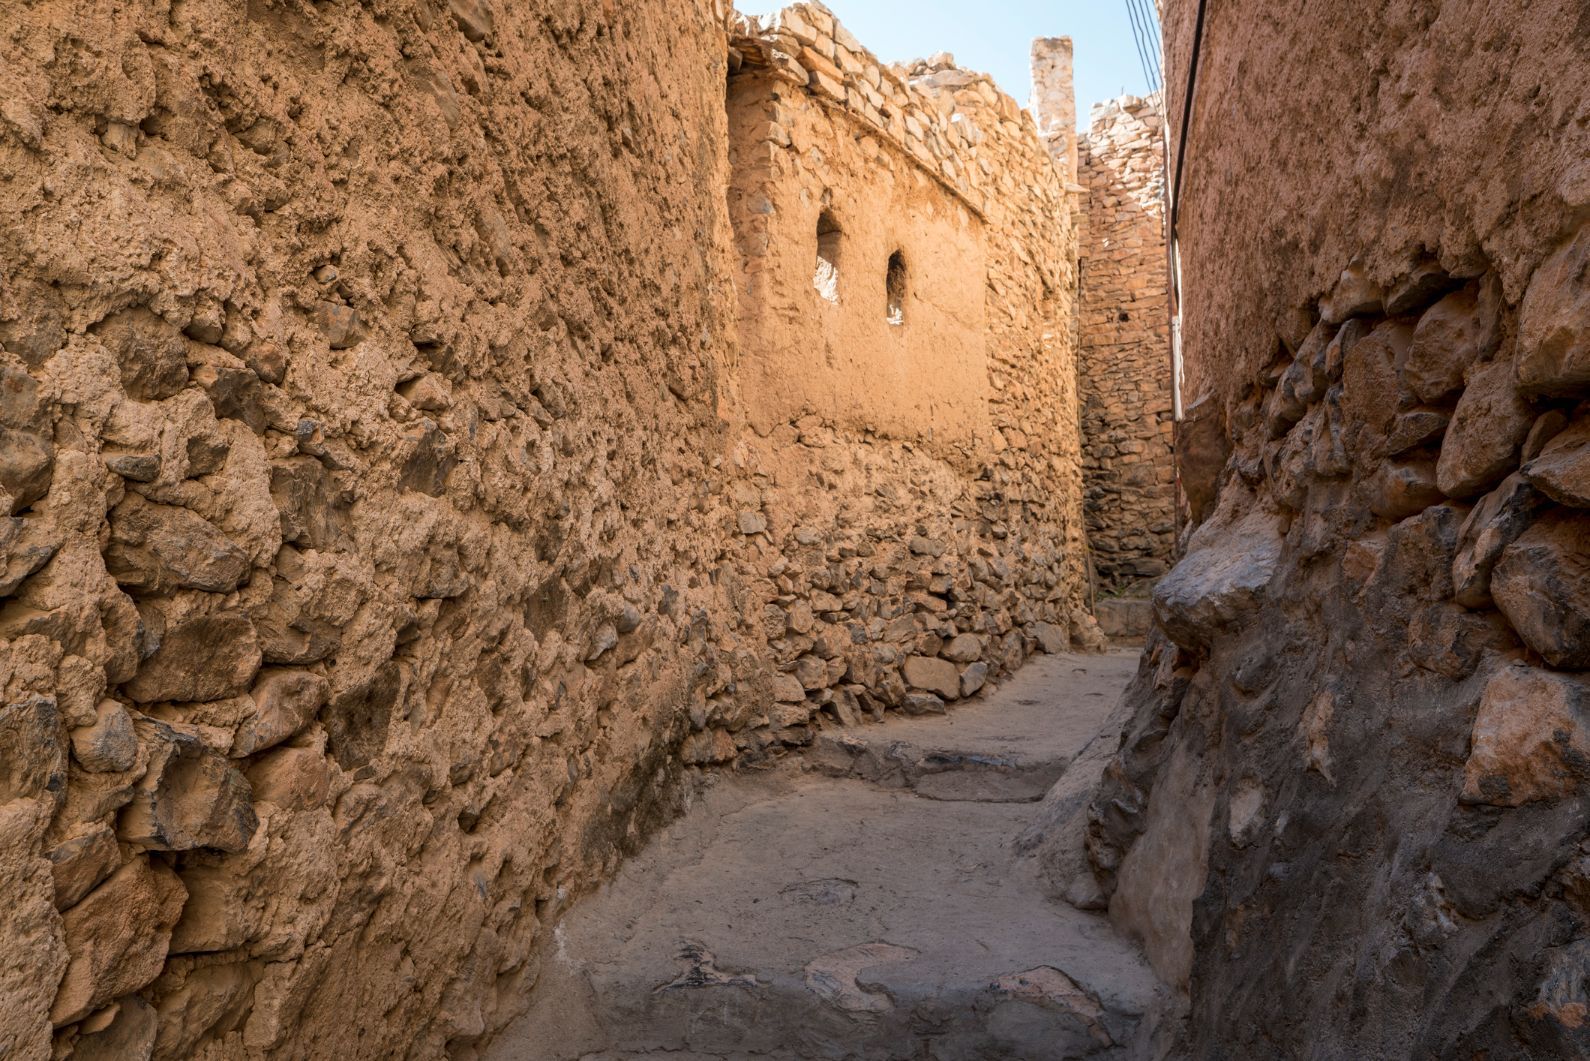 The Omani mud village of Misfat Al Abriyeen